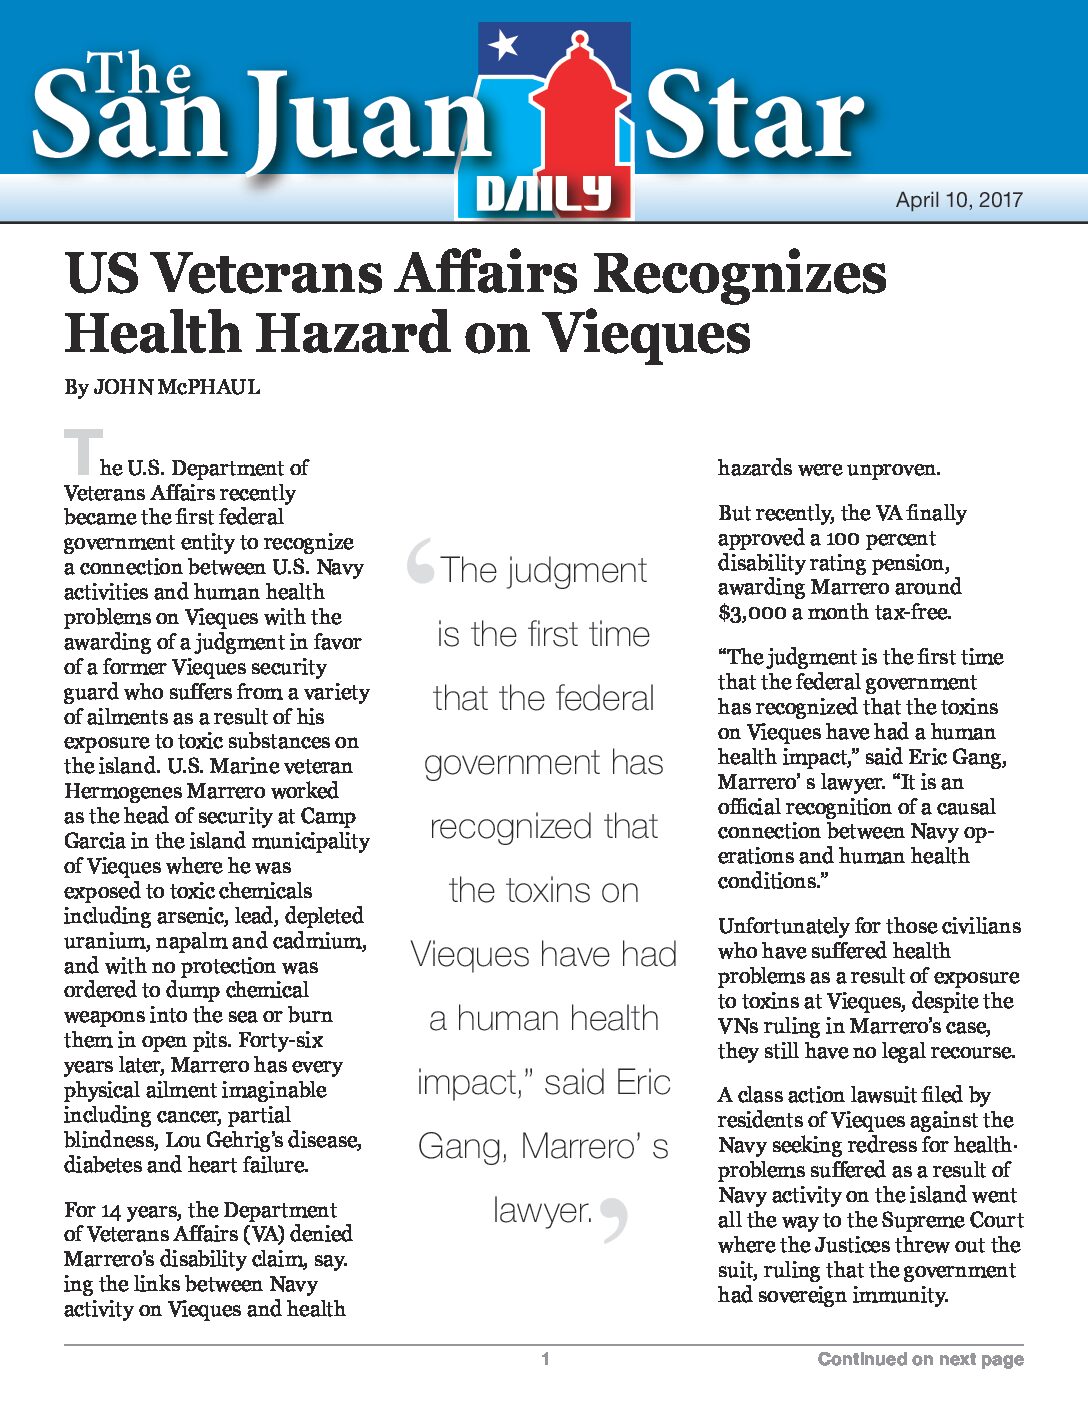 US Veterans Affairs Recognizes Health Hazard on Vieques